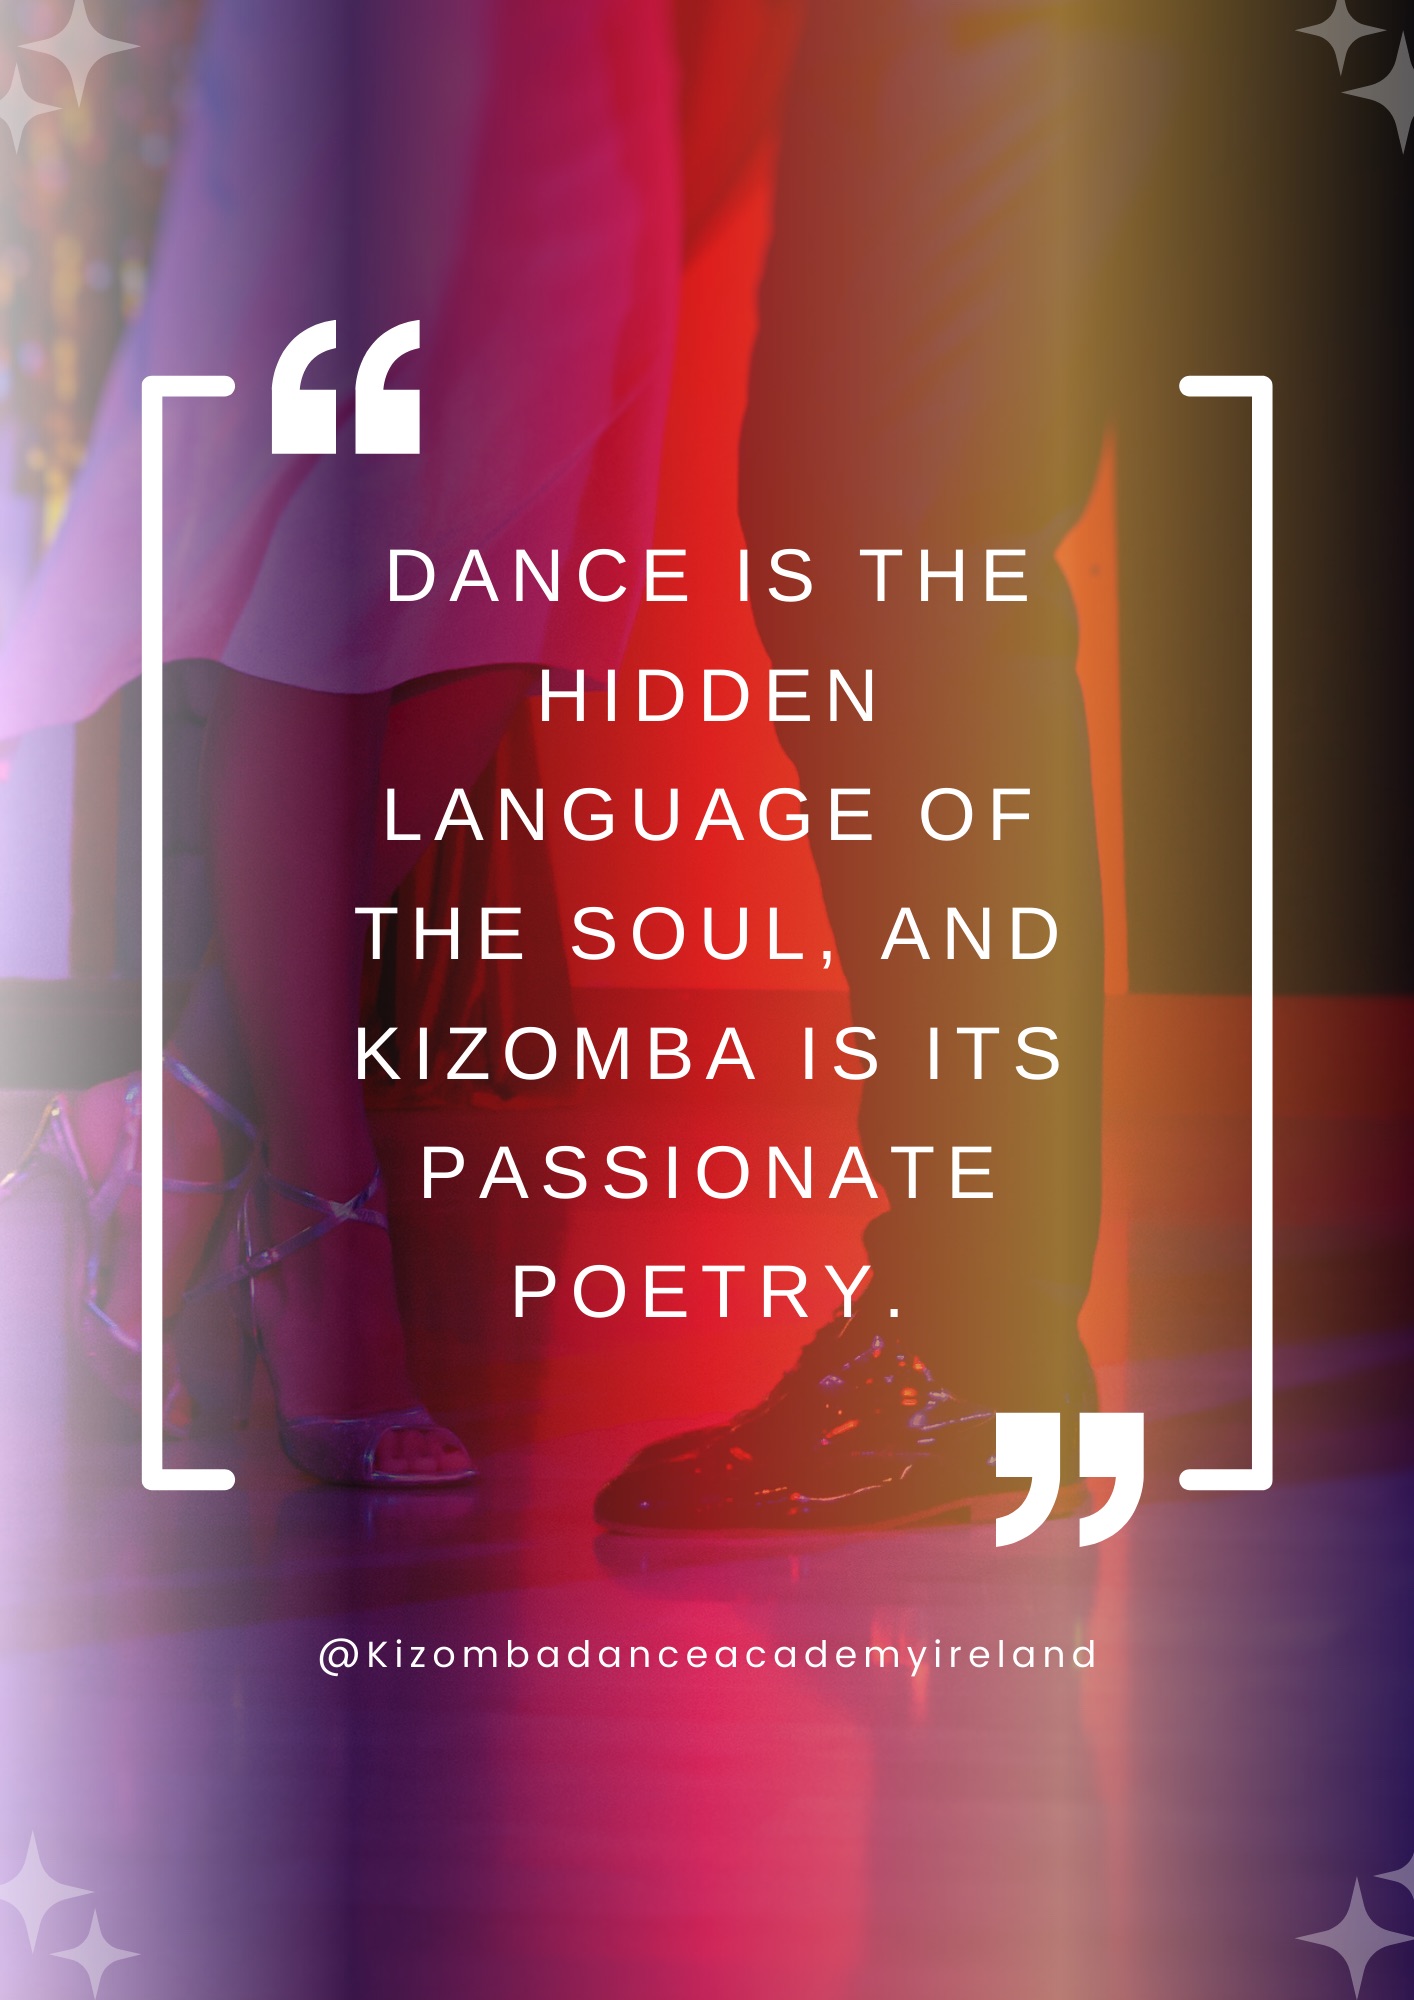 Esmeraldo - Kizomba Dance Academy Ireland